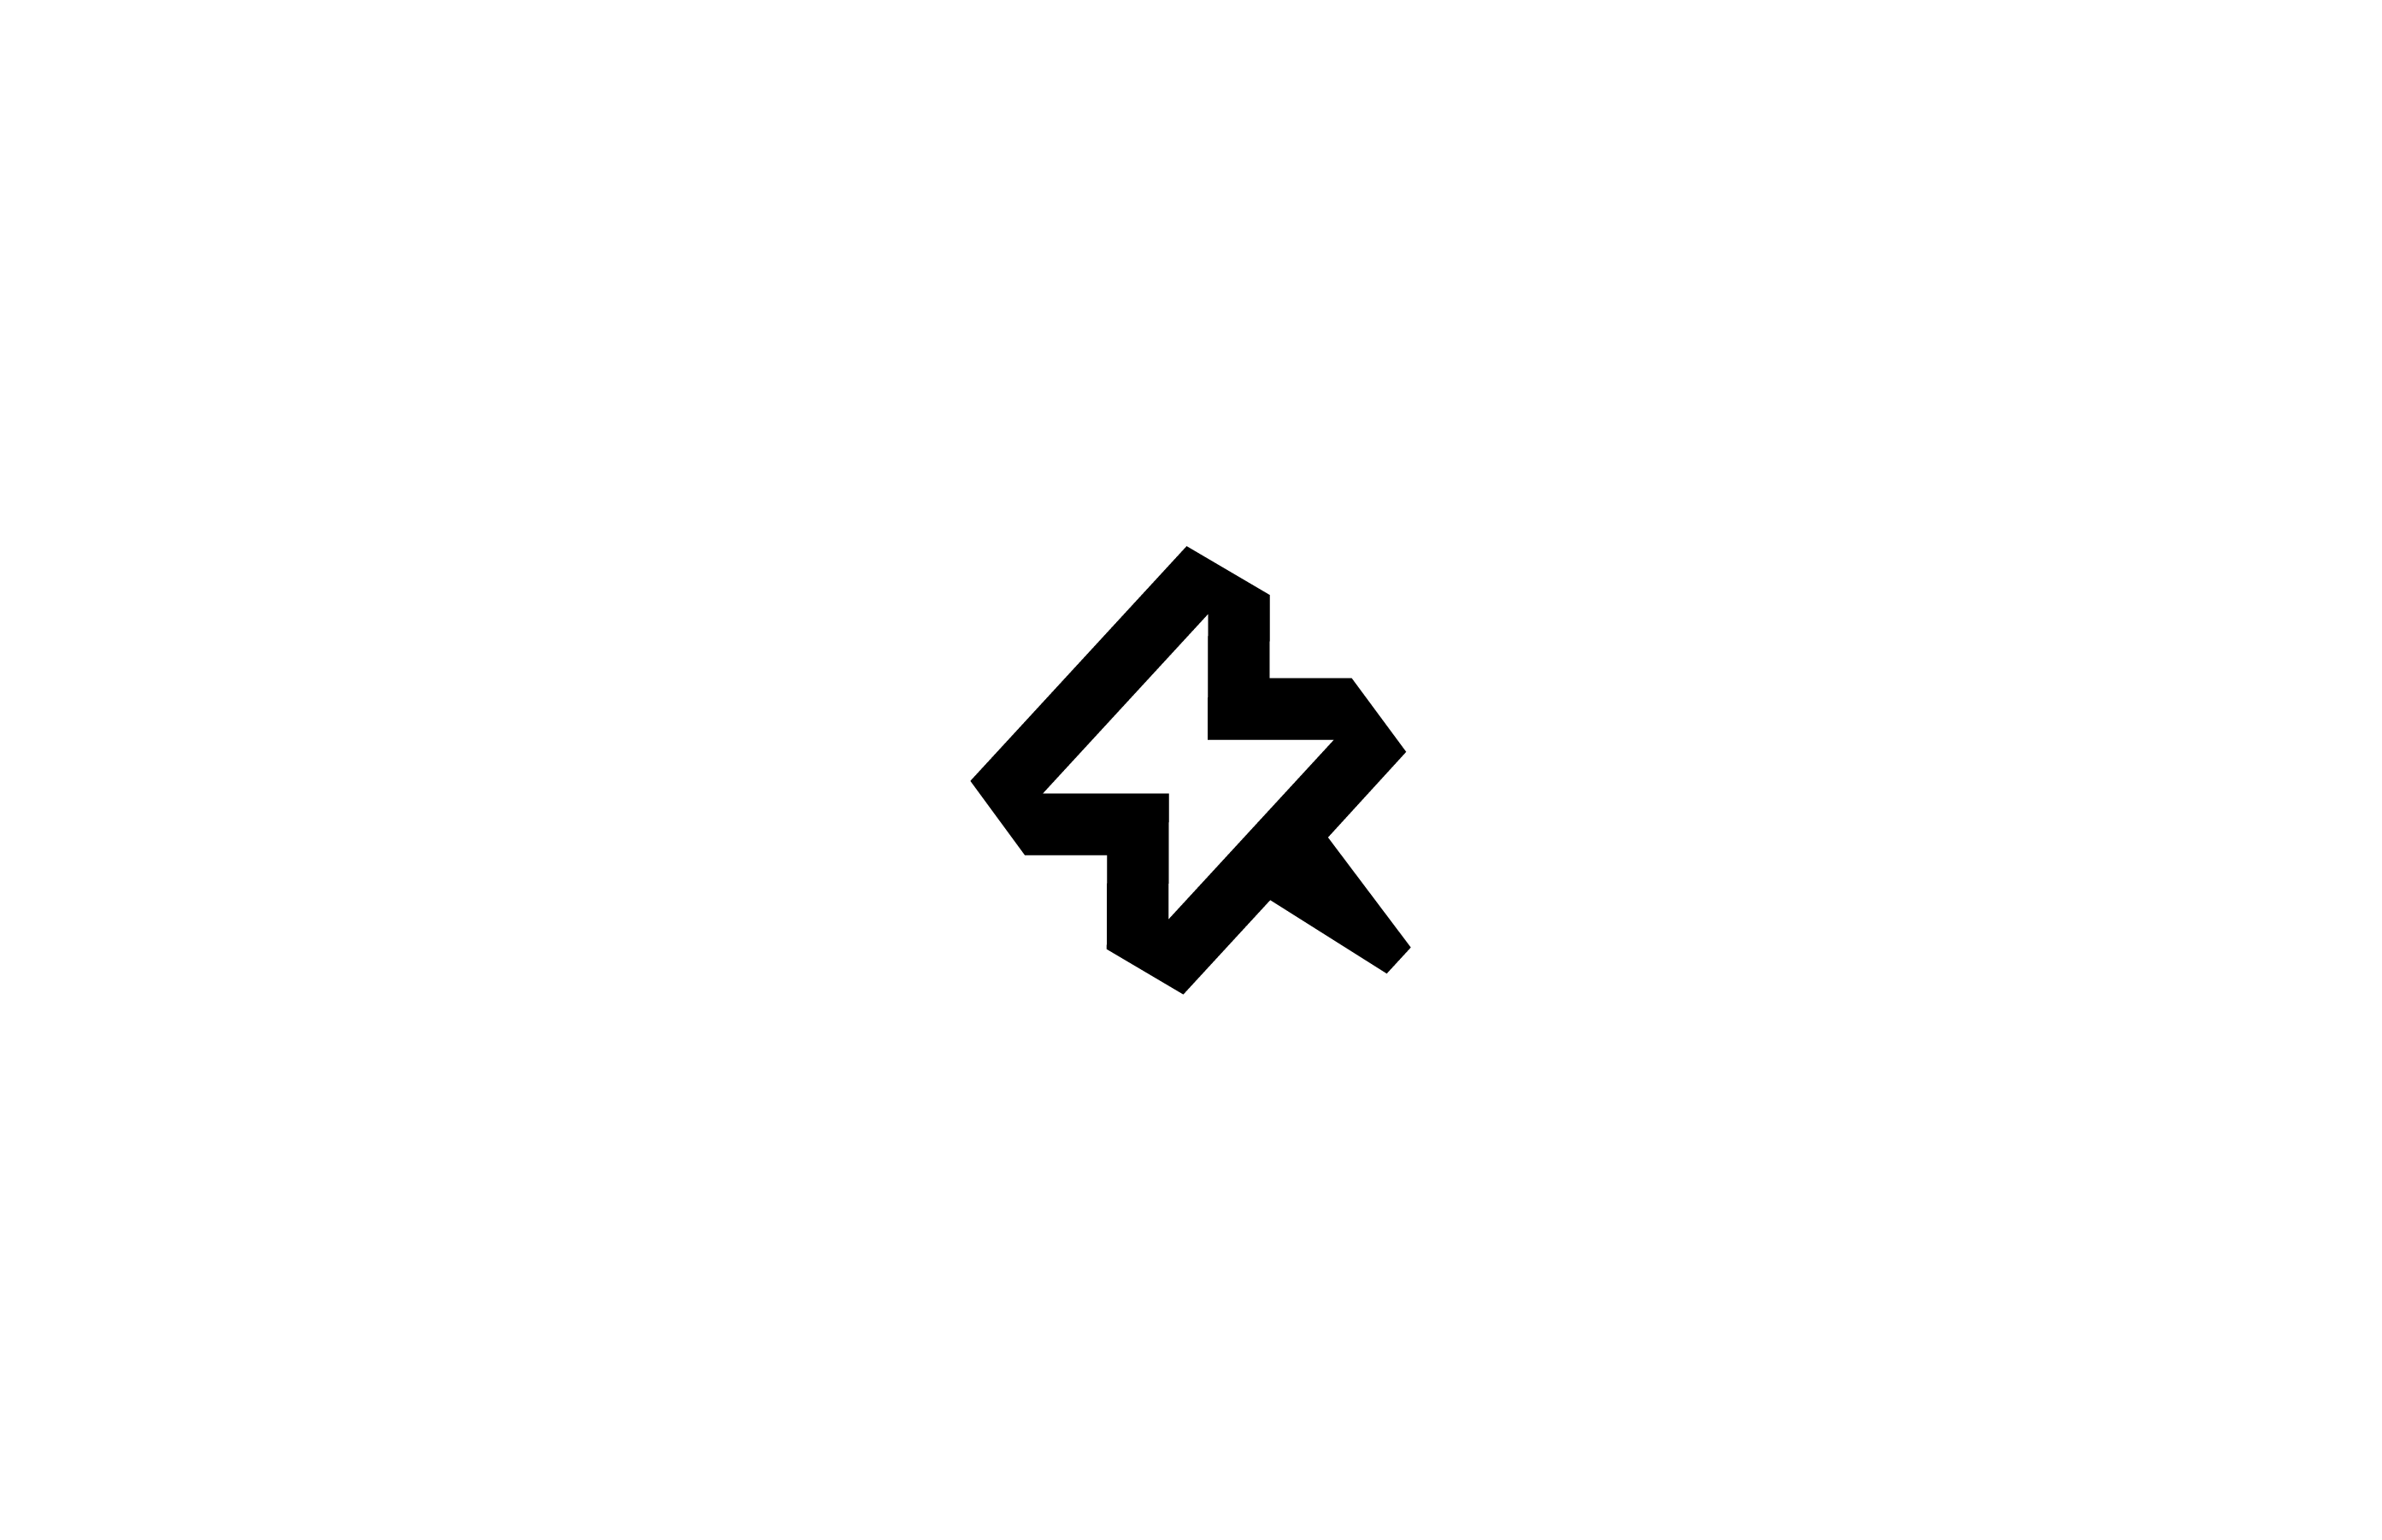 bolt thunder lightning pin classic logo design mark symbol timeless